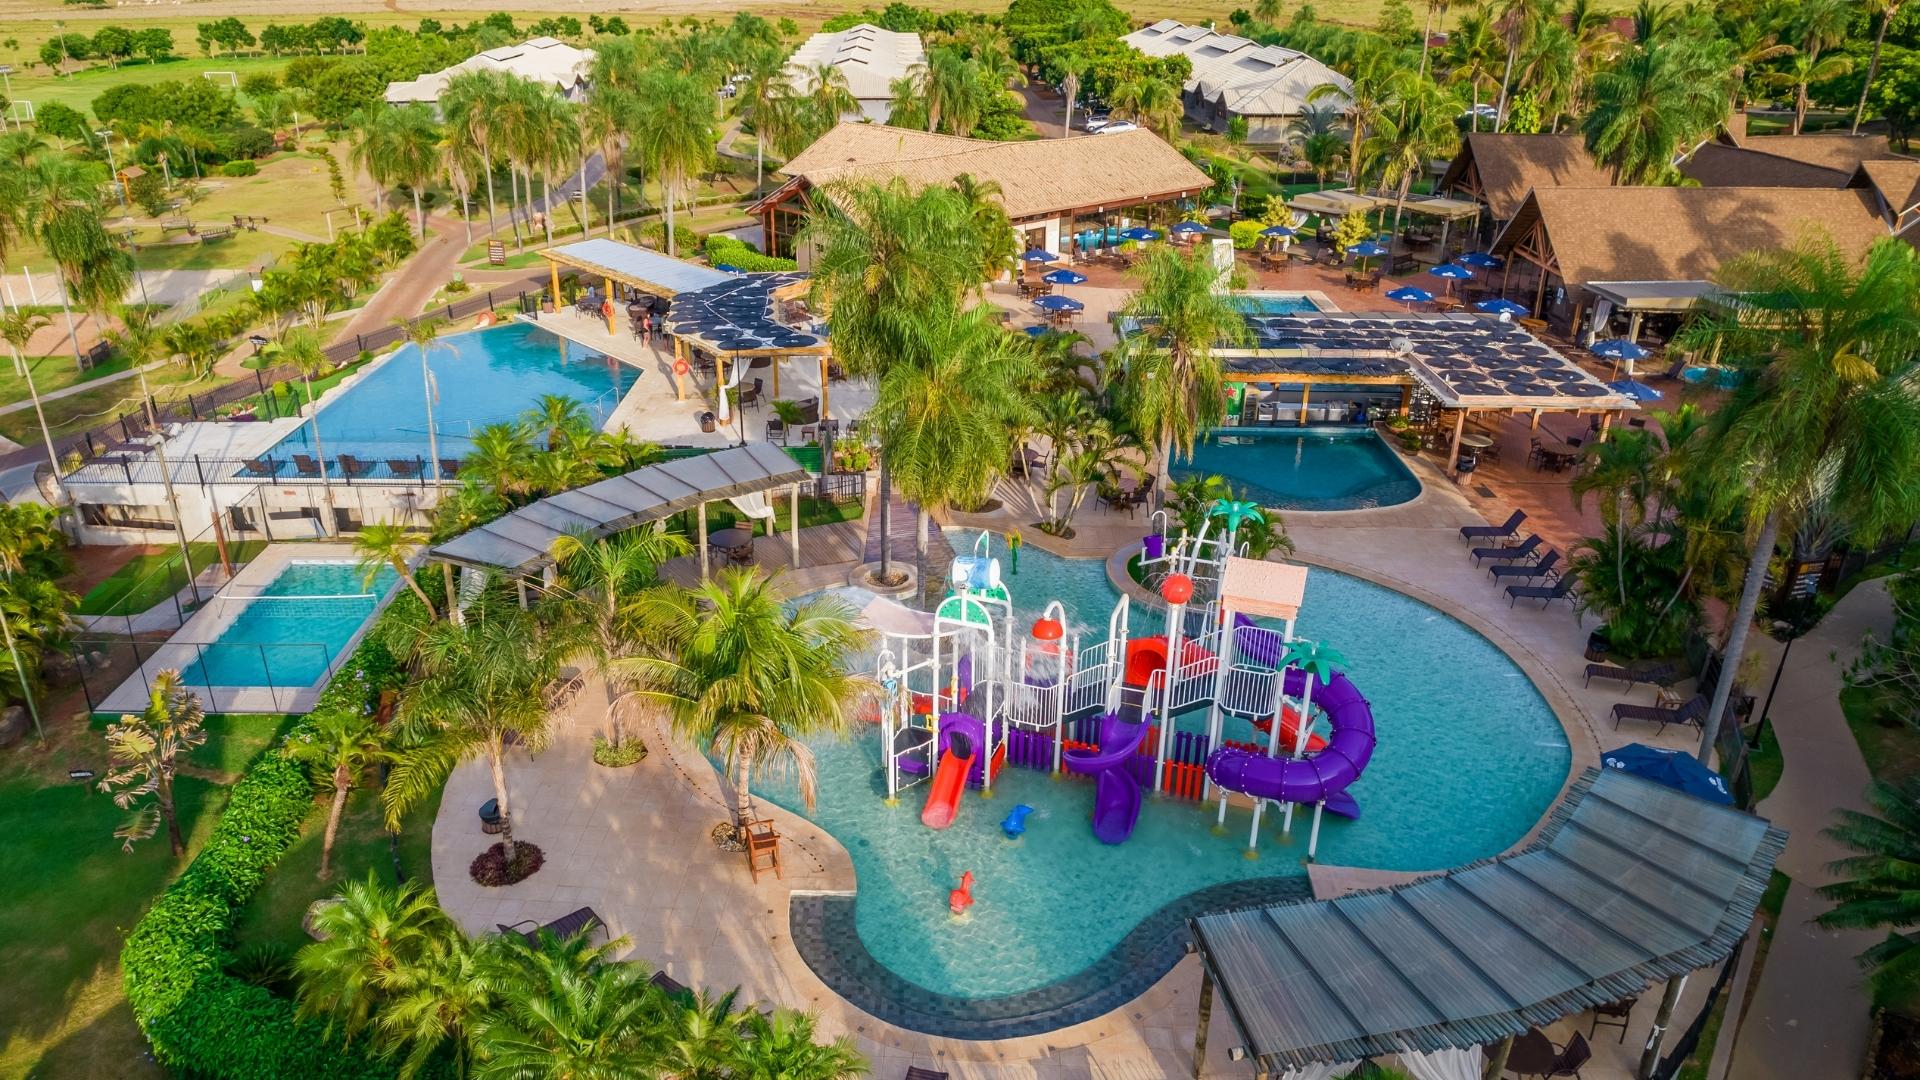 Zagaia Eco Resort oferece 25% de desconto em todas as tarifas até junho de 2023 | Foto da jacuzzi | Conexão123